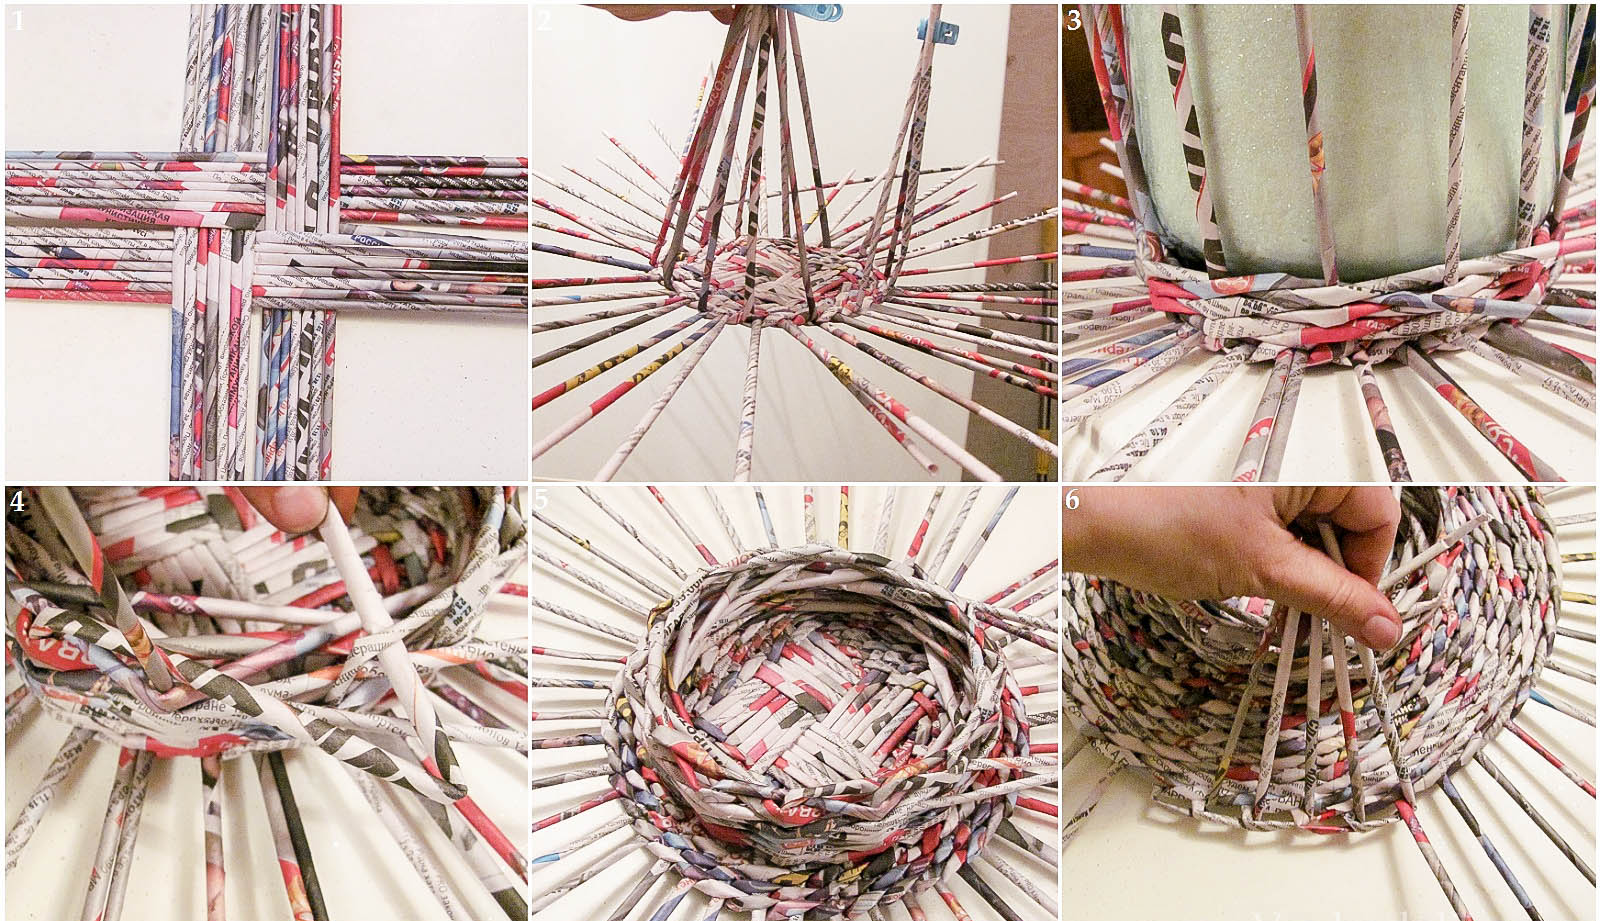 Плетение из газетных трубочек для начинающих - пошаговая инструкция с видео и фото